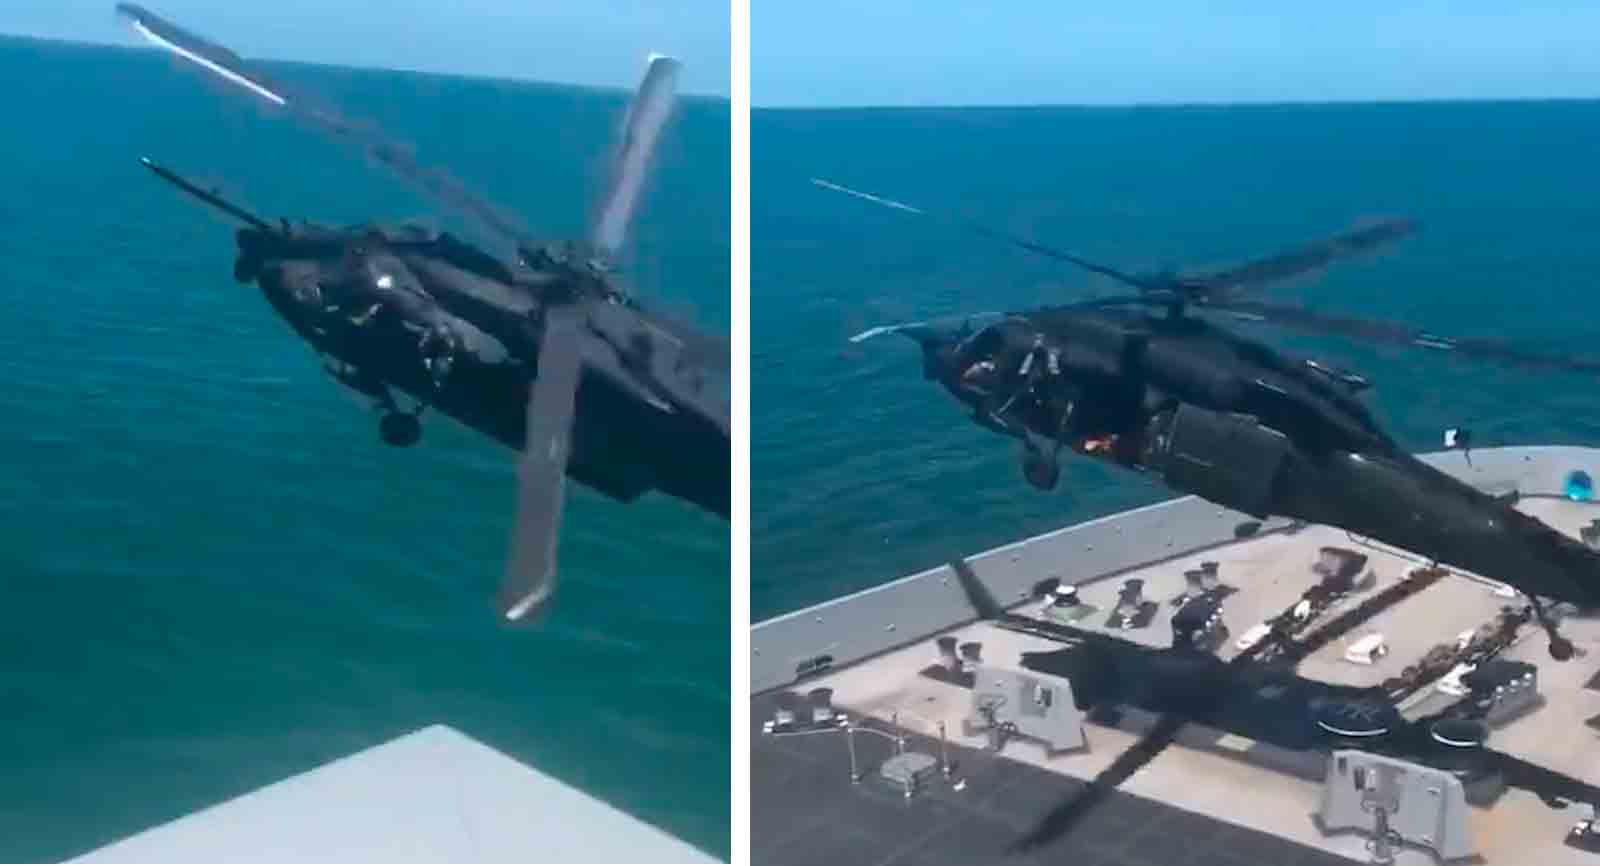 驚人的視頻顯示了美國陸軍直升機如何攔截和入侵移動中的船隻。照片和視頻：推特 @stallhornlulul 複製